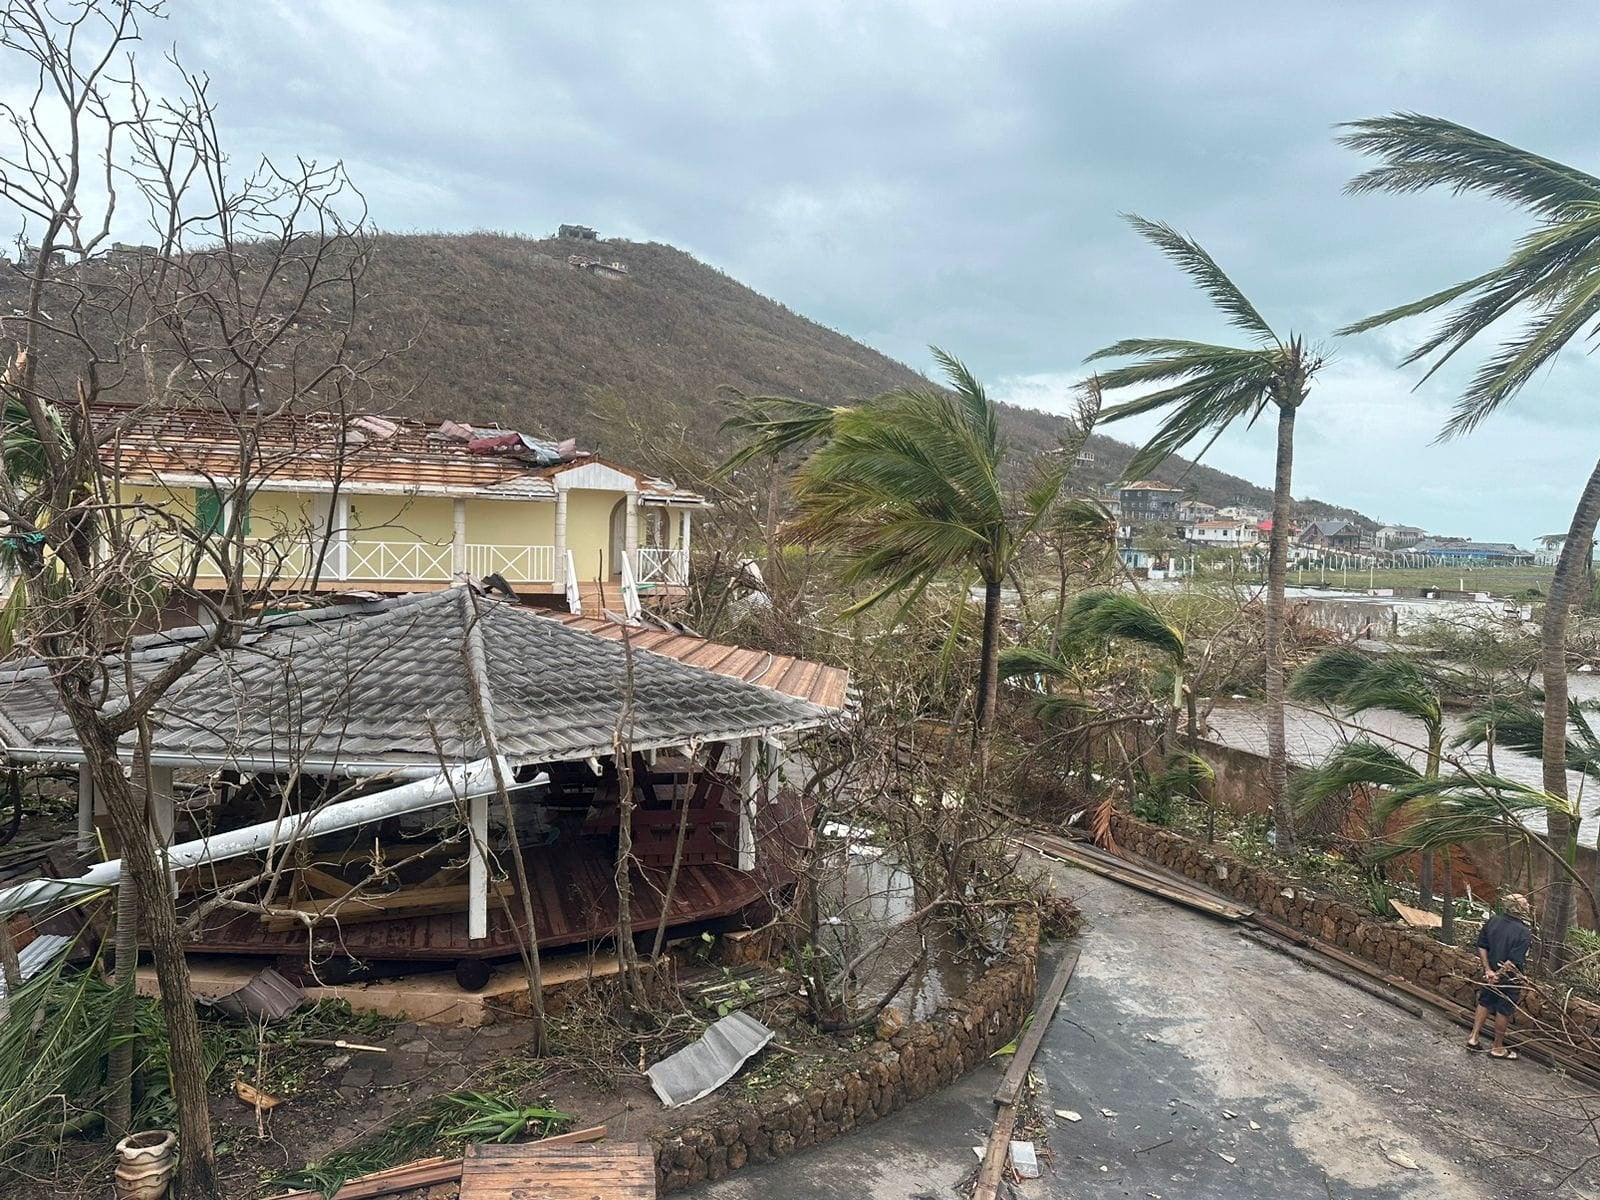 Uszkodzone konstrukcje i drzewa na zdjęciu po przejściu huraganu Beryl w Saint Vincent i Grenadynach